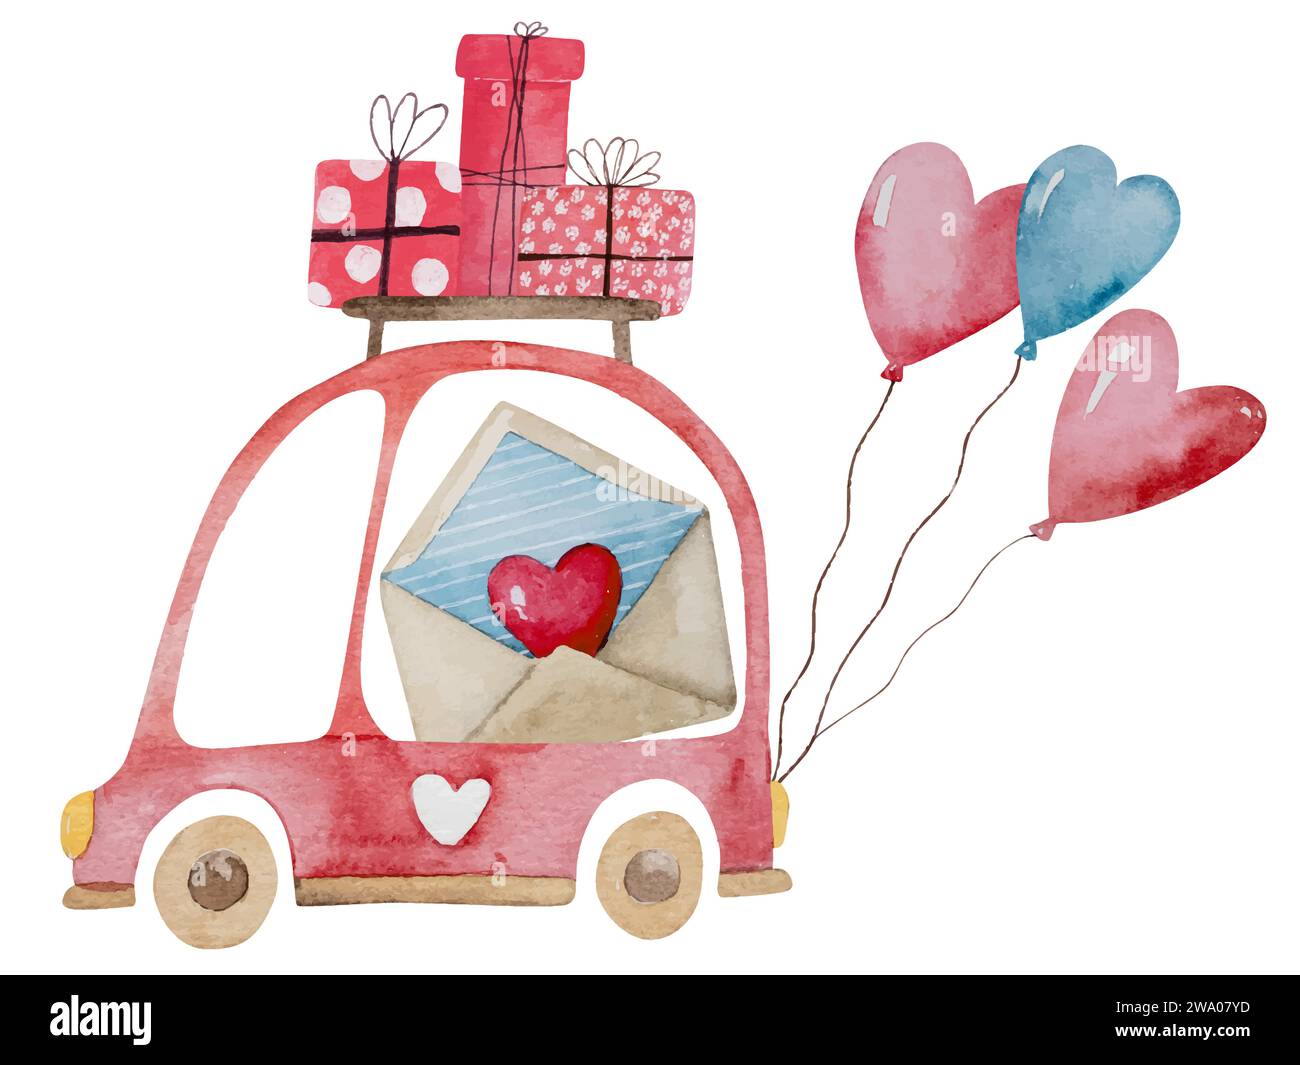 Clipart di illustrazione acquerello disegnato a mano a tema il 14 febbraio, con Un'auto con regali e palloncini per San Valentino e Una casa su ruote con regali Illustrazione Vettoriale